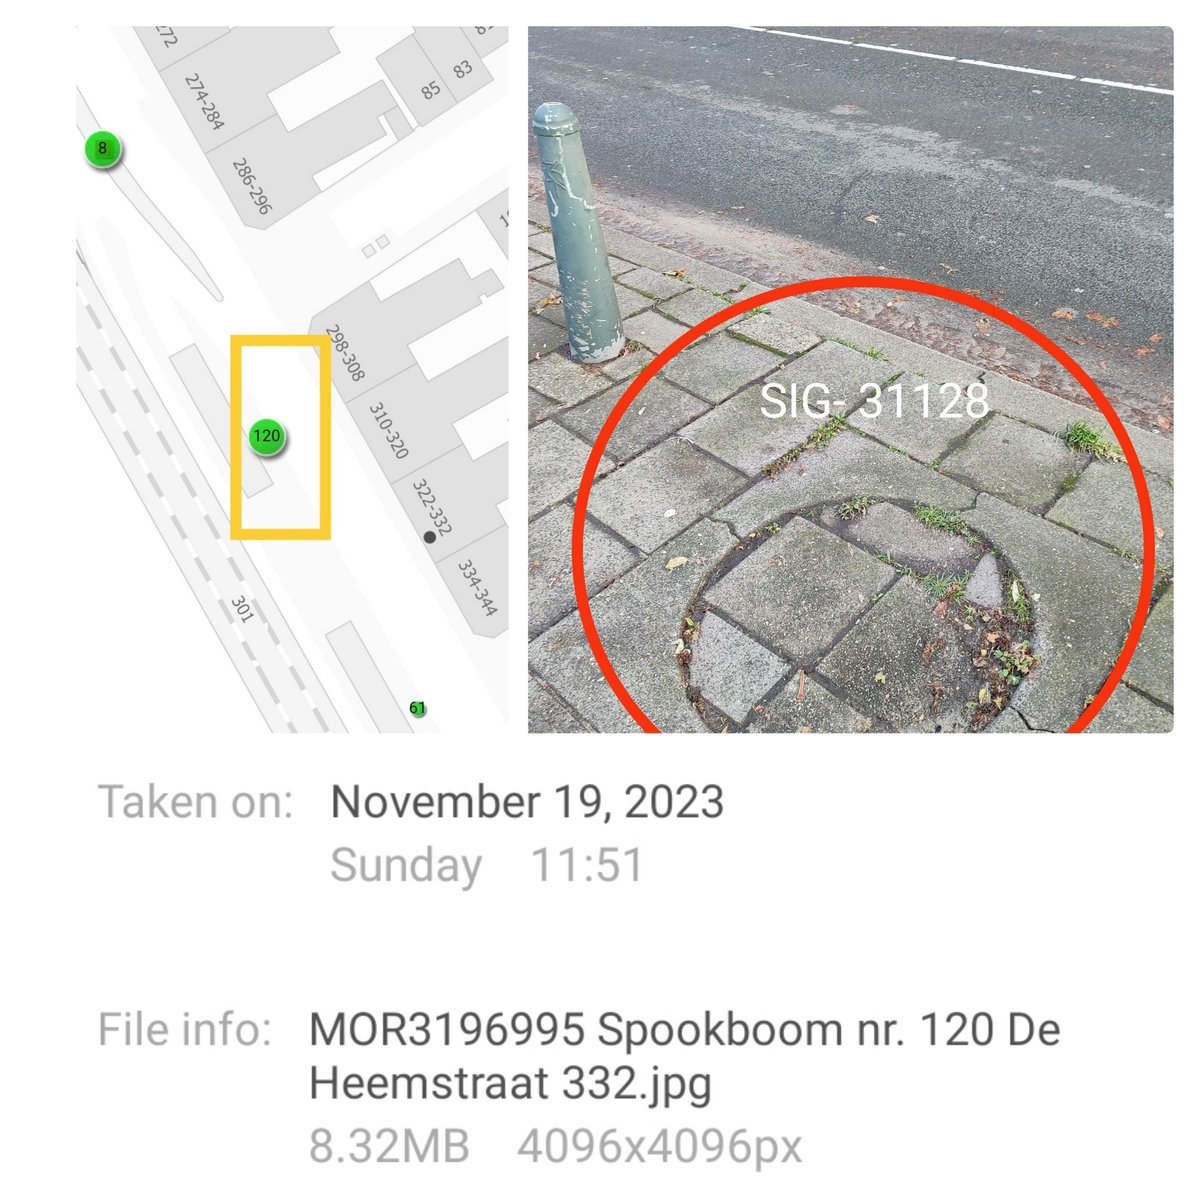 Deze bestrate boomspiegel in De Heemstraat graag meenemen in herplant seizoen 2924-2025 @GemeenteDenHaag  #isgemeld voor de 2e keer #groenmoetjedoem